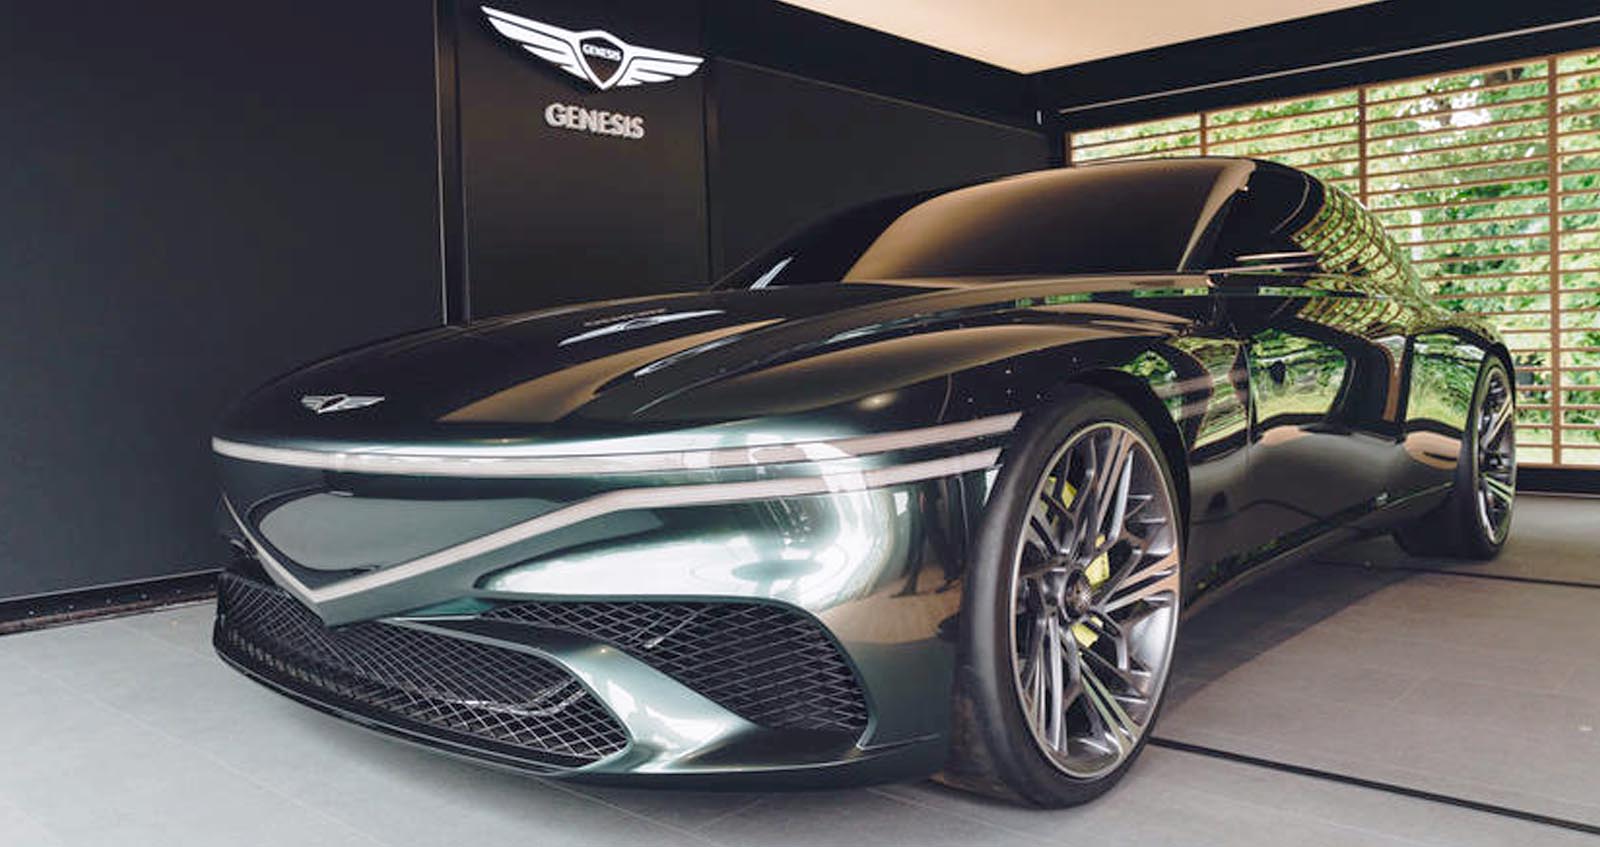 ภาพคันจริง Genesis X Speedium Coupe รถต้นแบบไฟฟ้า แห่งอนาคตของแบรนด์